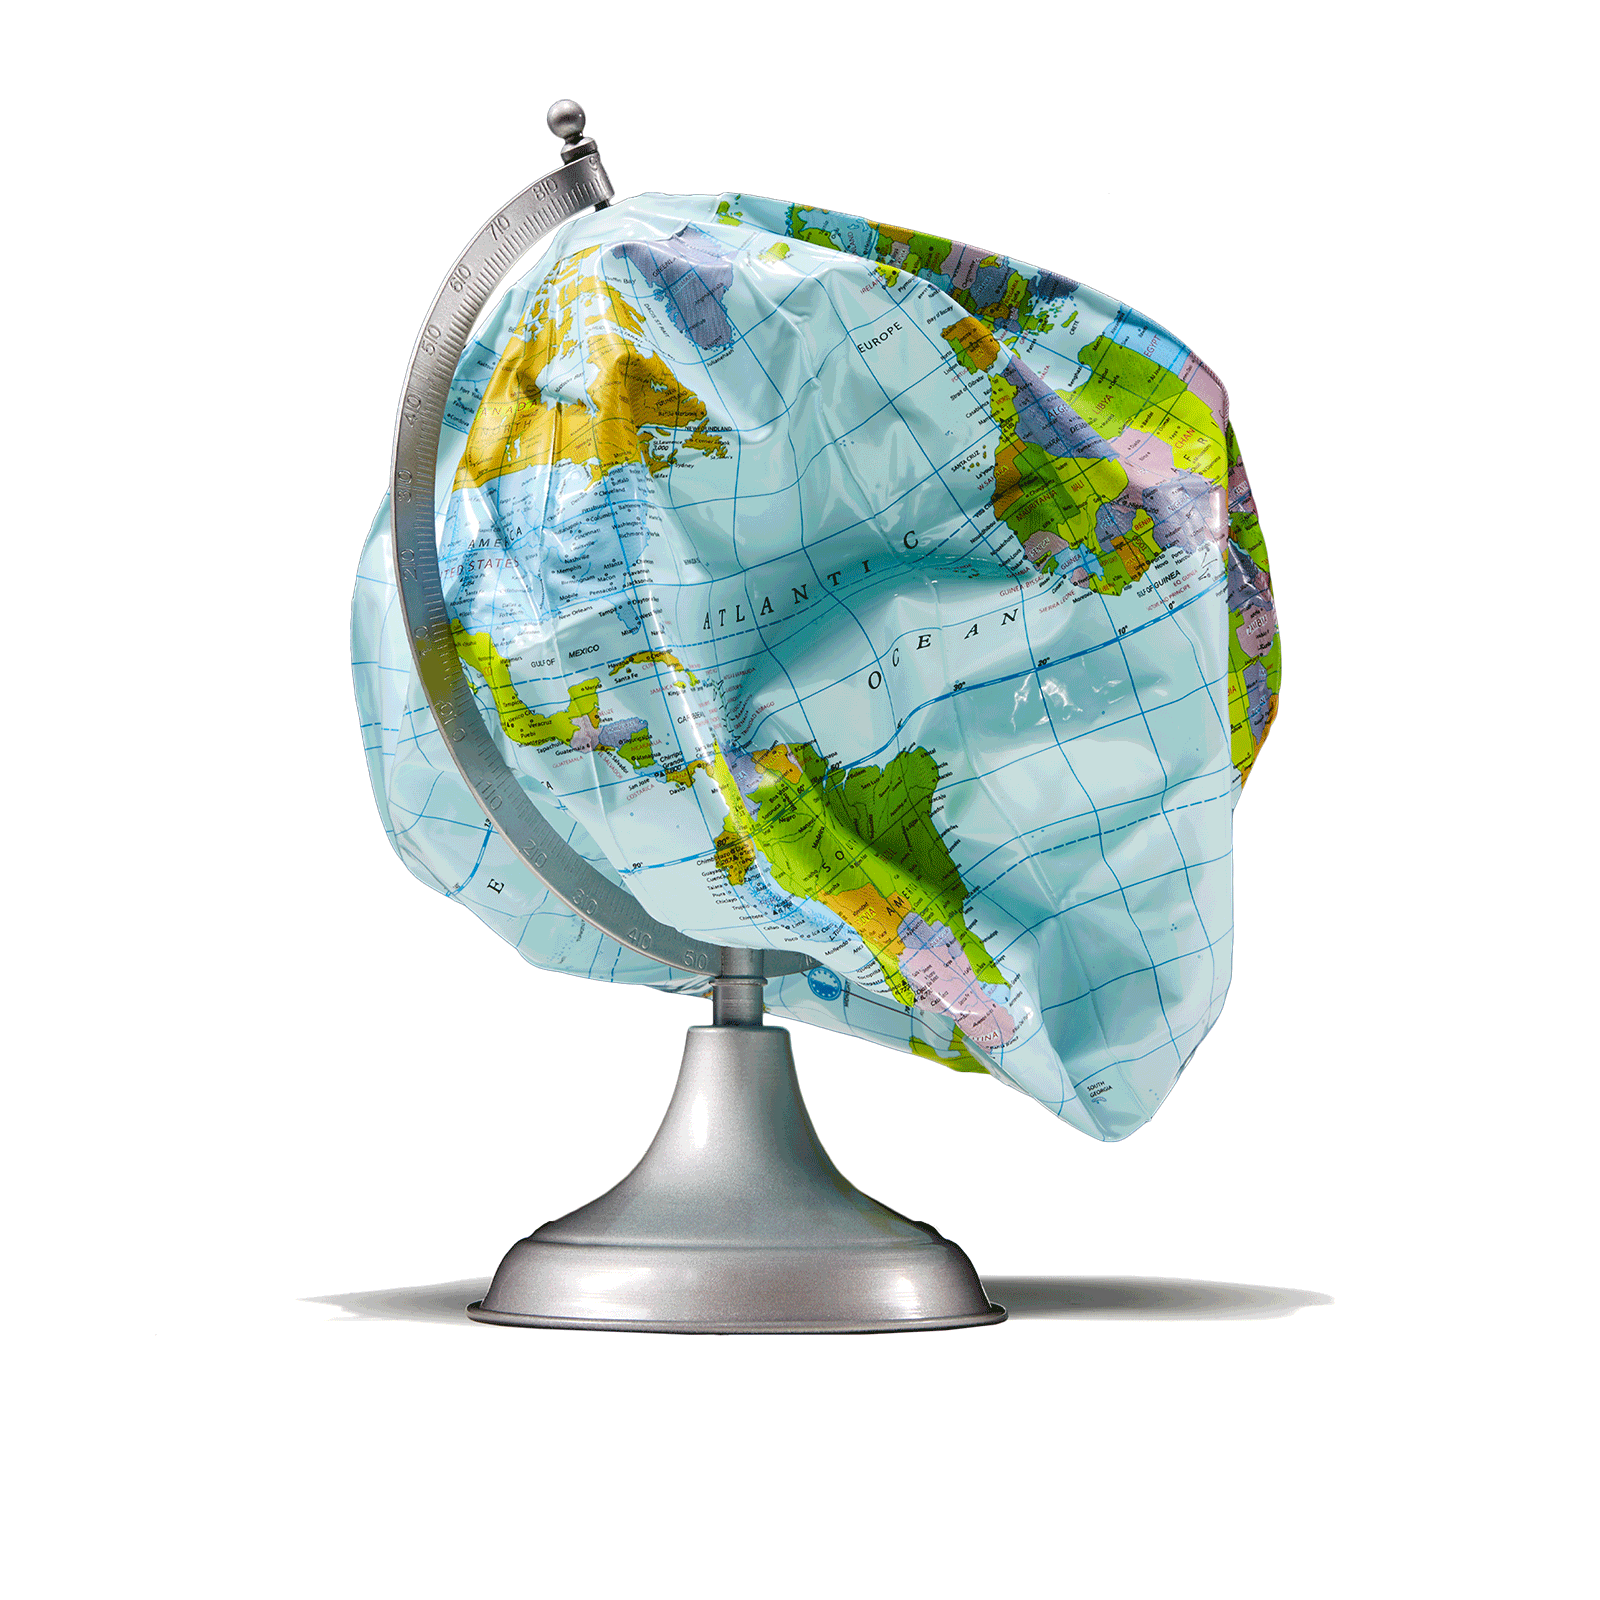 A deflated globe